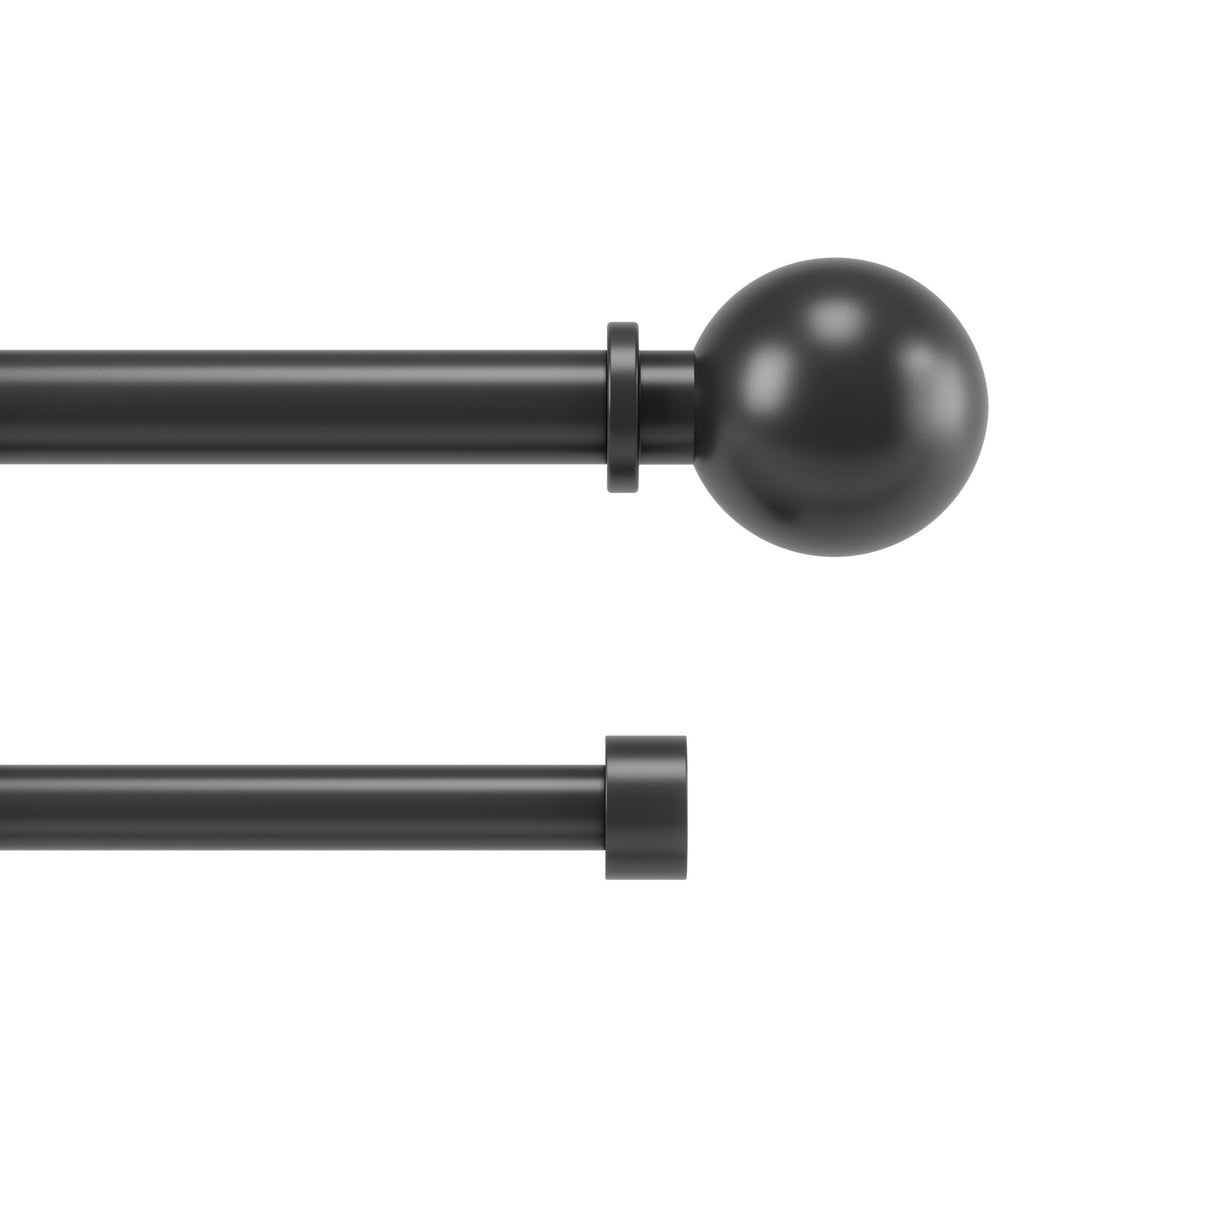 Double Curtain Rods | color: Matte-Black | size: 72-144" (183-366 cm) | diameter: 1" (2.5 cm)